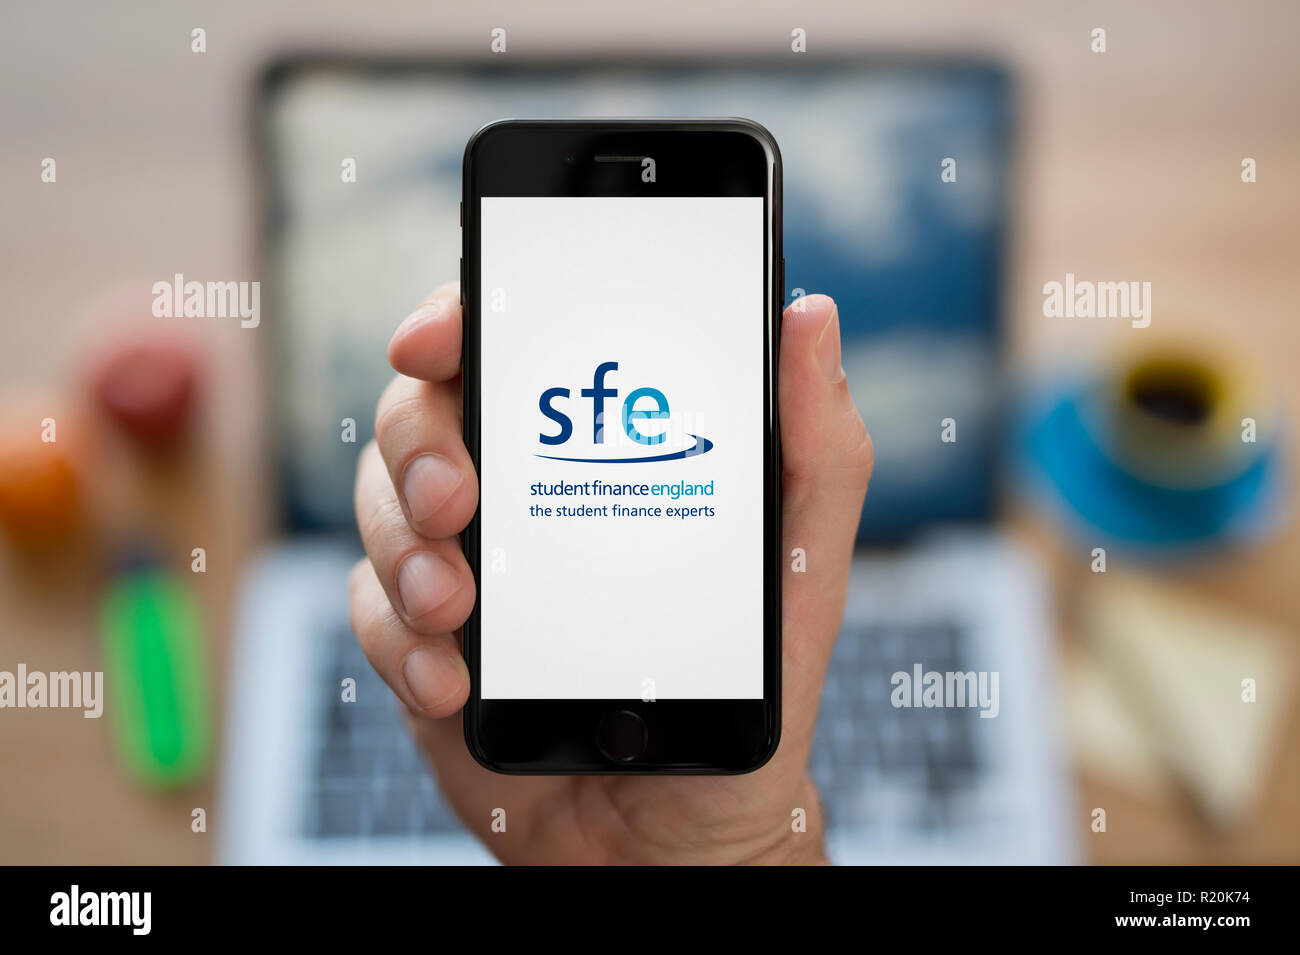 Un homme se penche sur son iPhone qui affiche la situation financière des étudiants en Angleterre (SFE), tandis que le logo était assis à son bureau de l'ordinateur (usage éditorial uniquement). Banque D'Images